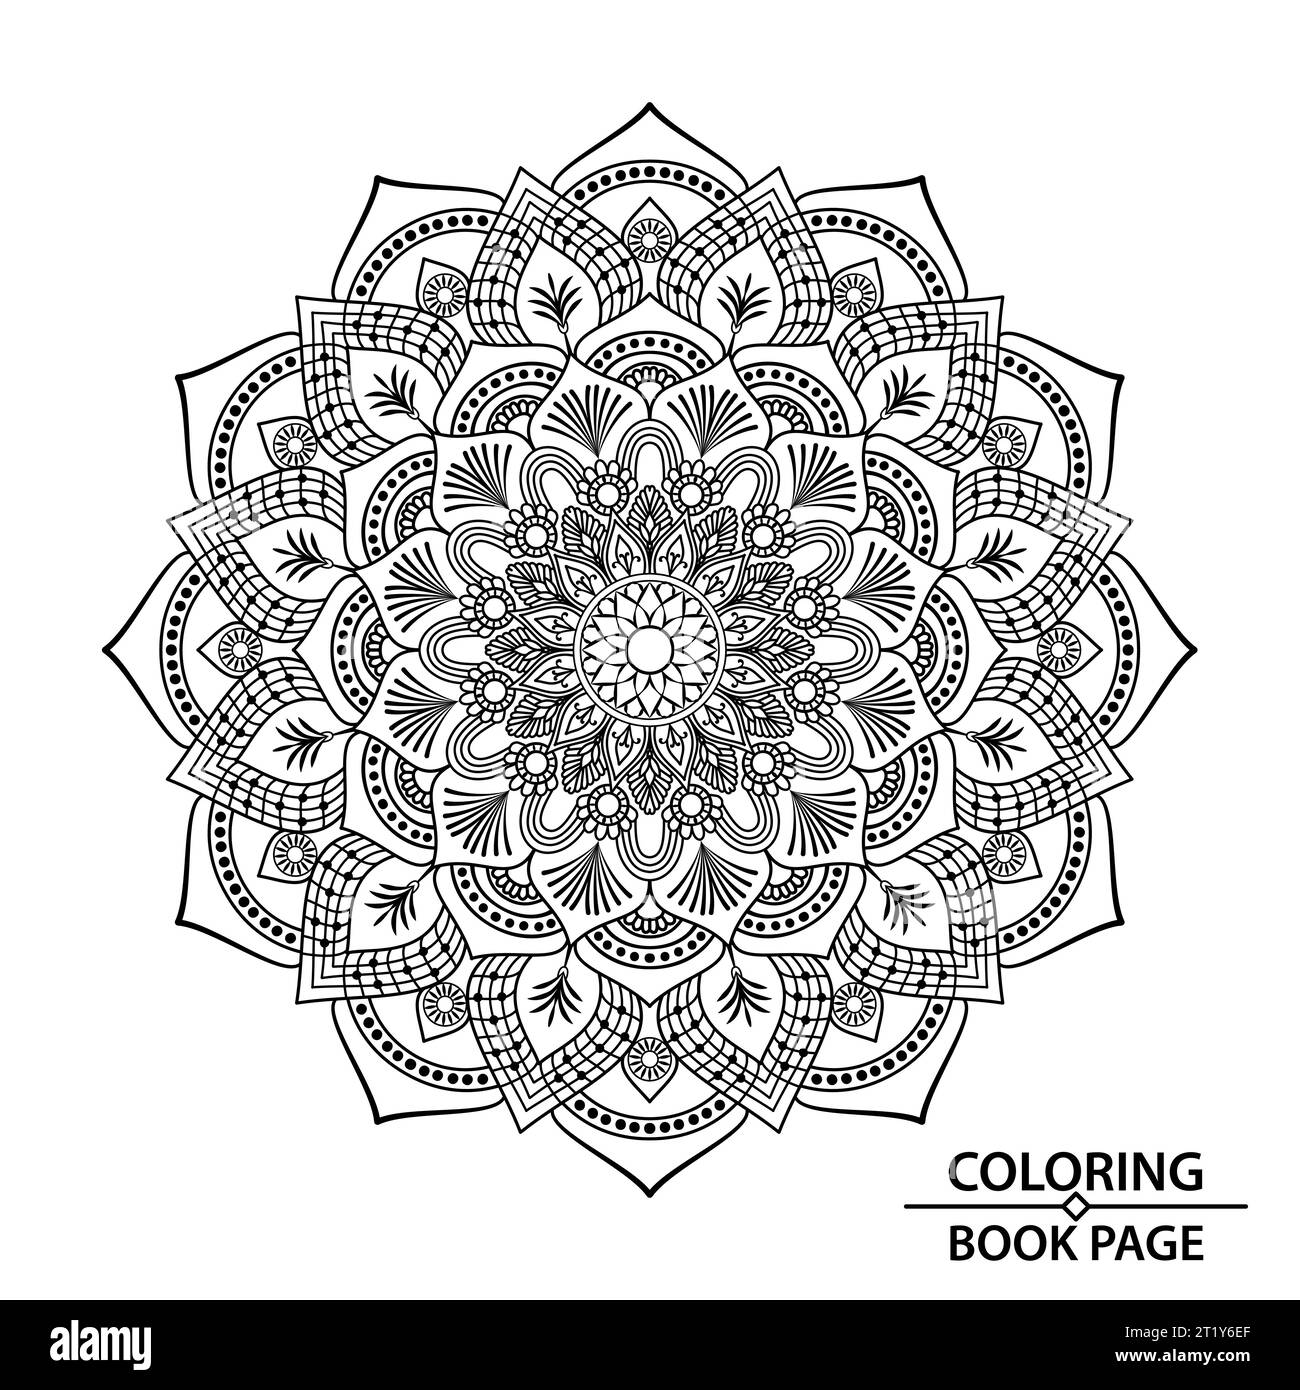 Circle afferma Mandala di colorare pagina libro per bambini. Easy Mandala Colouring Book pagine per adulti, capacità di rilassarsi, esperienze cerebrali donano Illustrazione Vettoriale